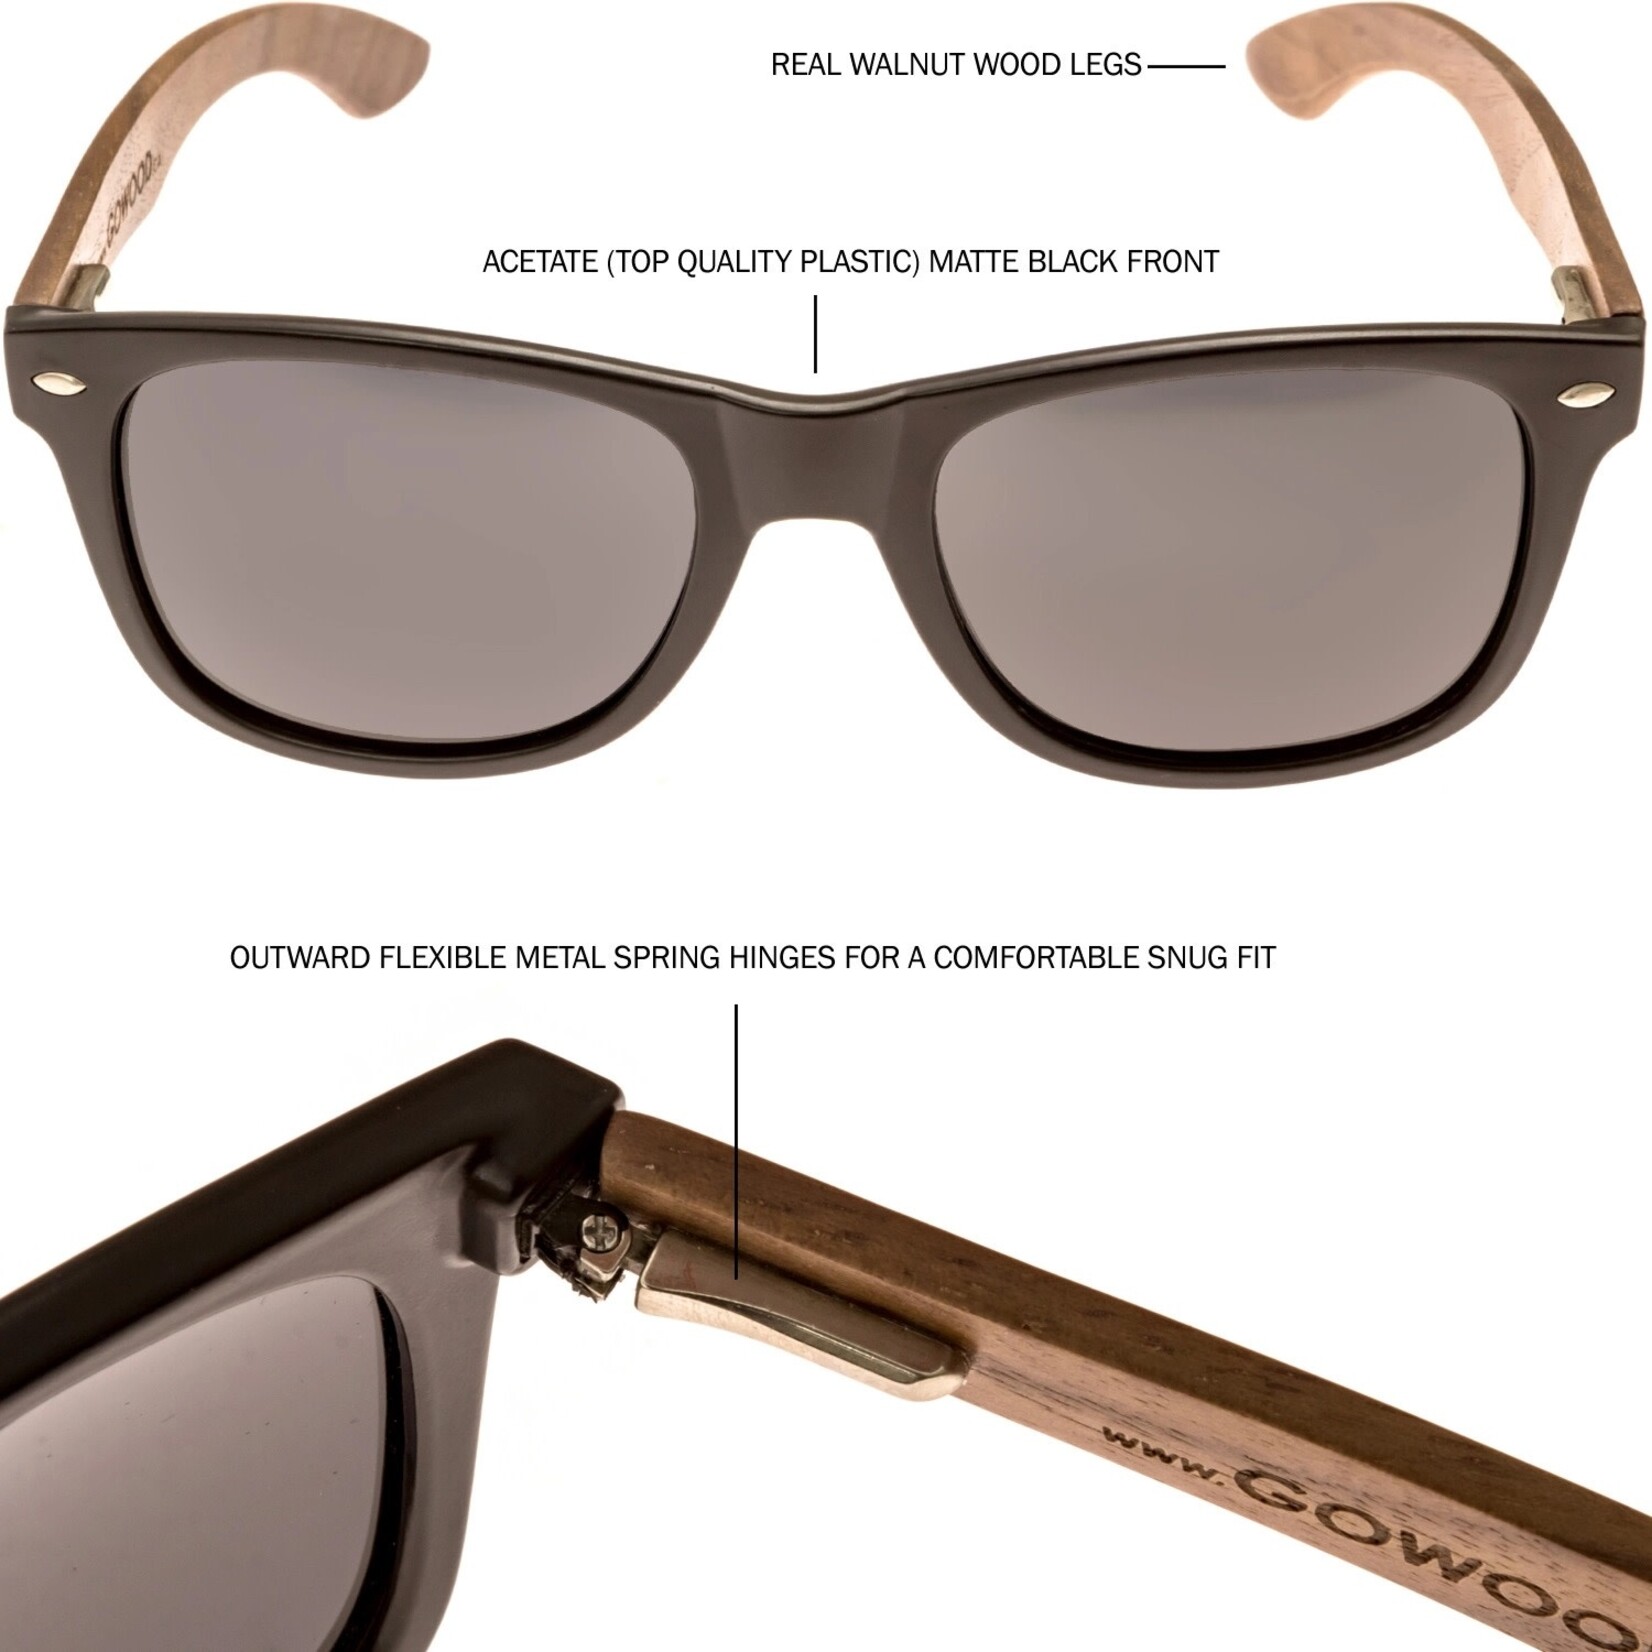 Go Wood Walnut Wood Sunglasses - Black Polarized Lenses